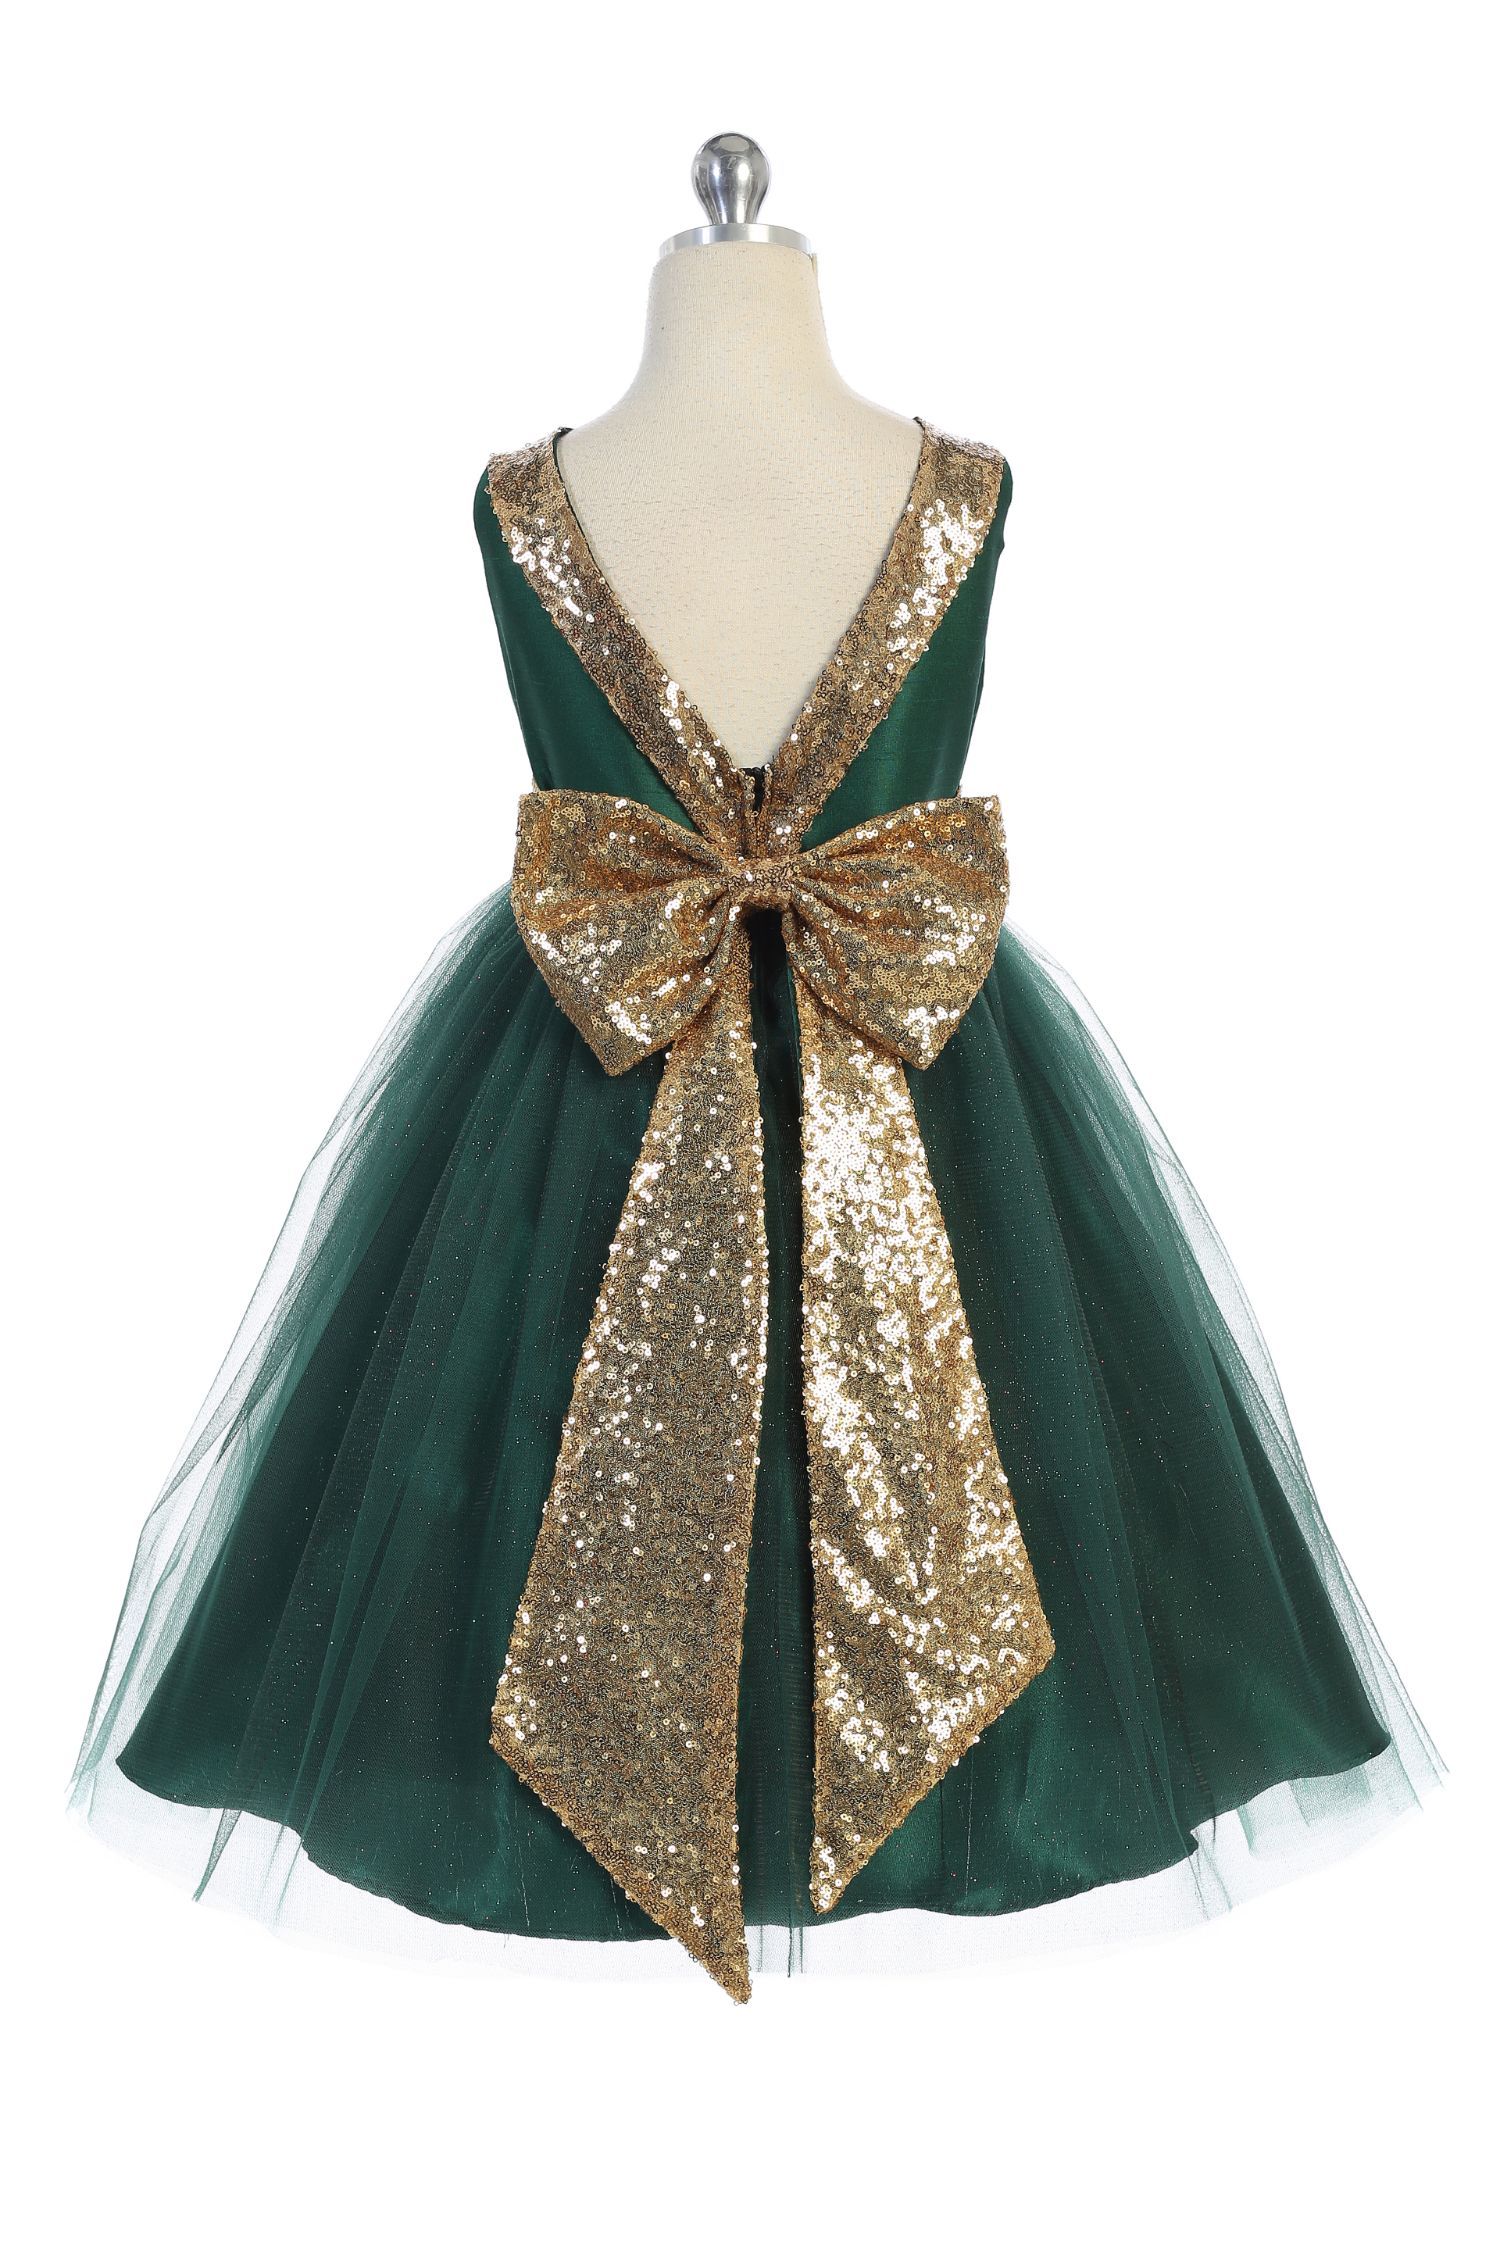 Dress - Gold Sequin Back V Plus Size Girl Dress